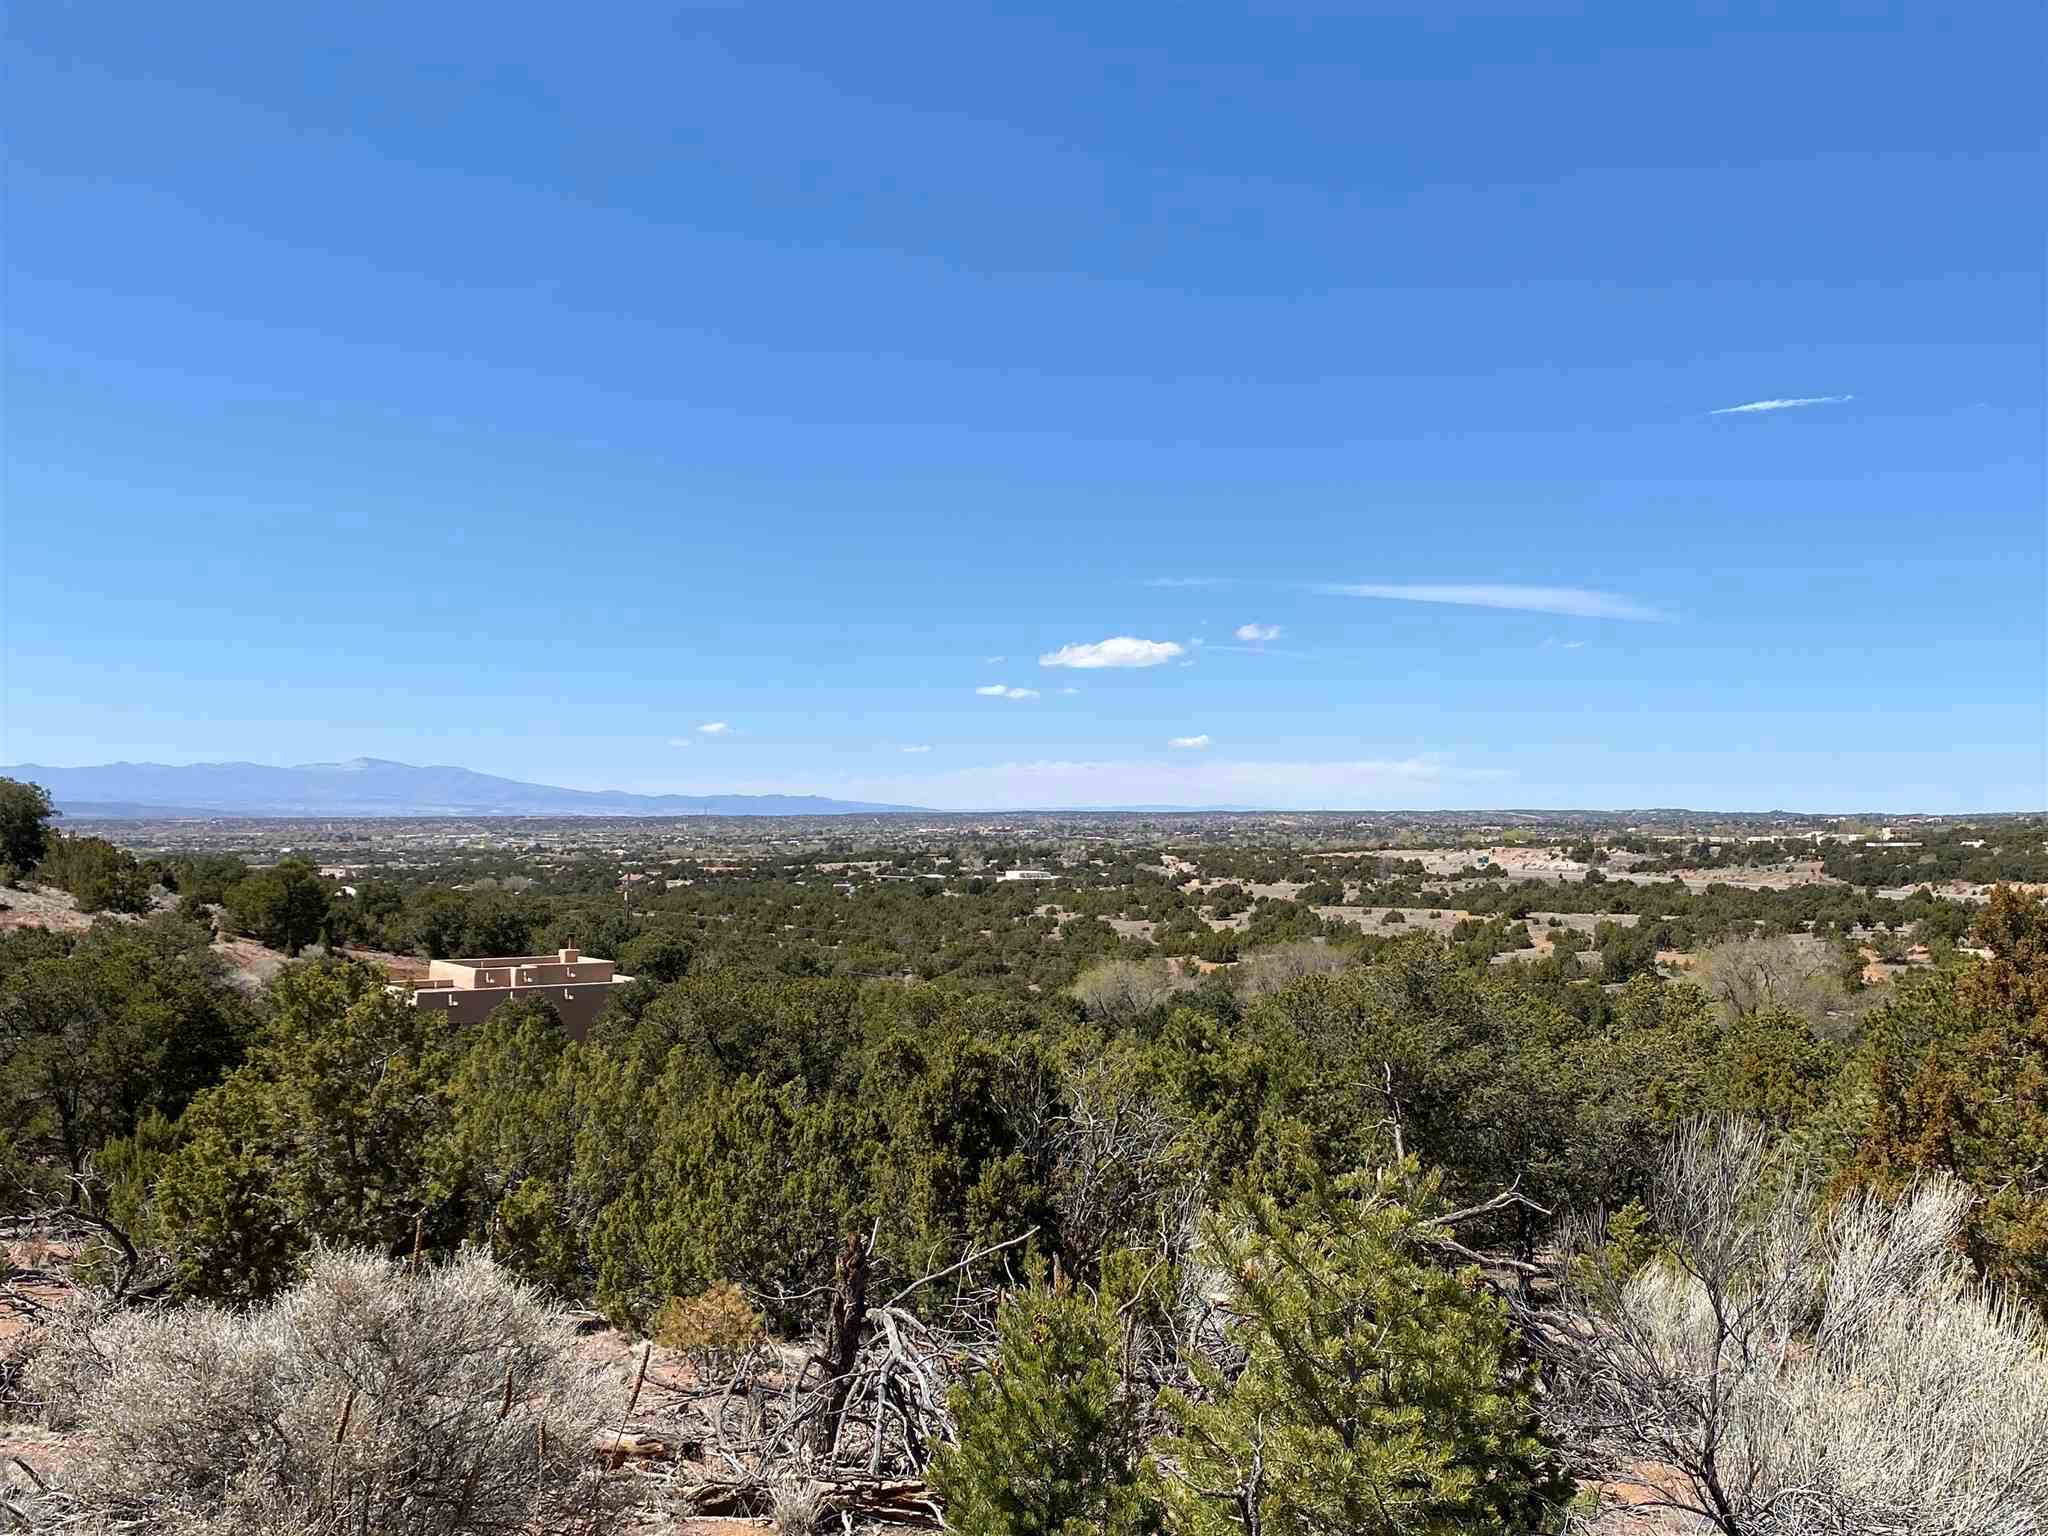 52 OLD AGUA FRIA, Santa Fe, New Mexico 87508, ,Land,For Sale,52 OLD AGUA FRIA,202101635